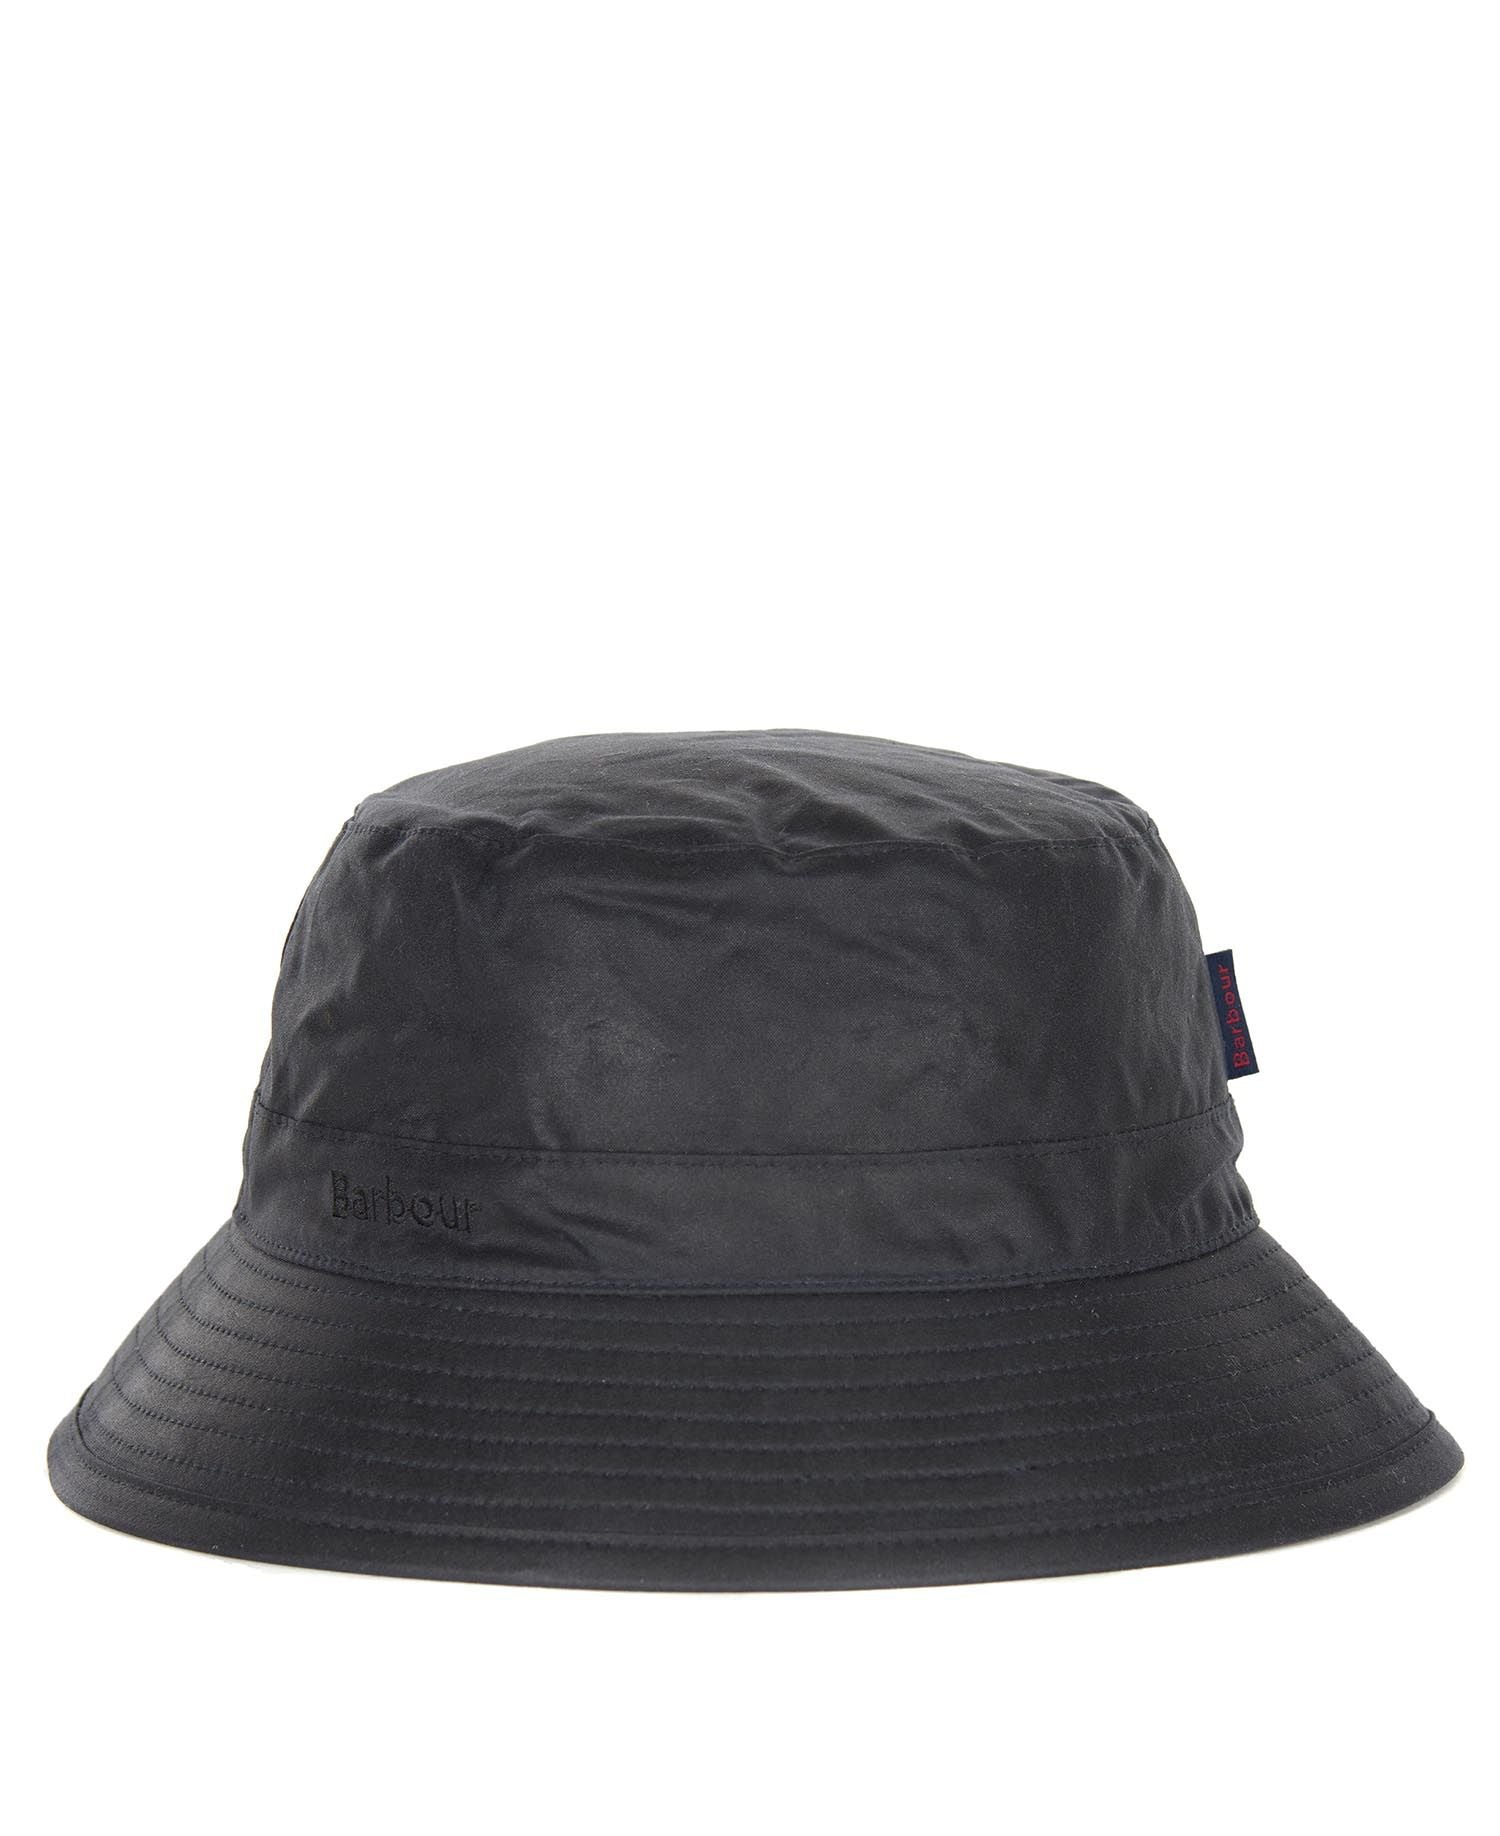 Barbour Sporthut Wax Hat